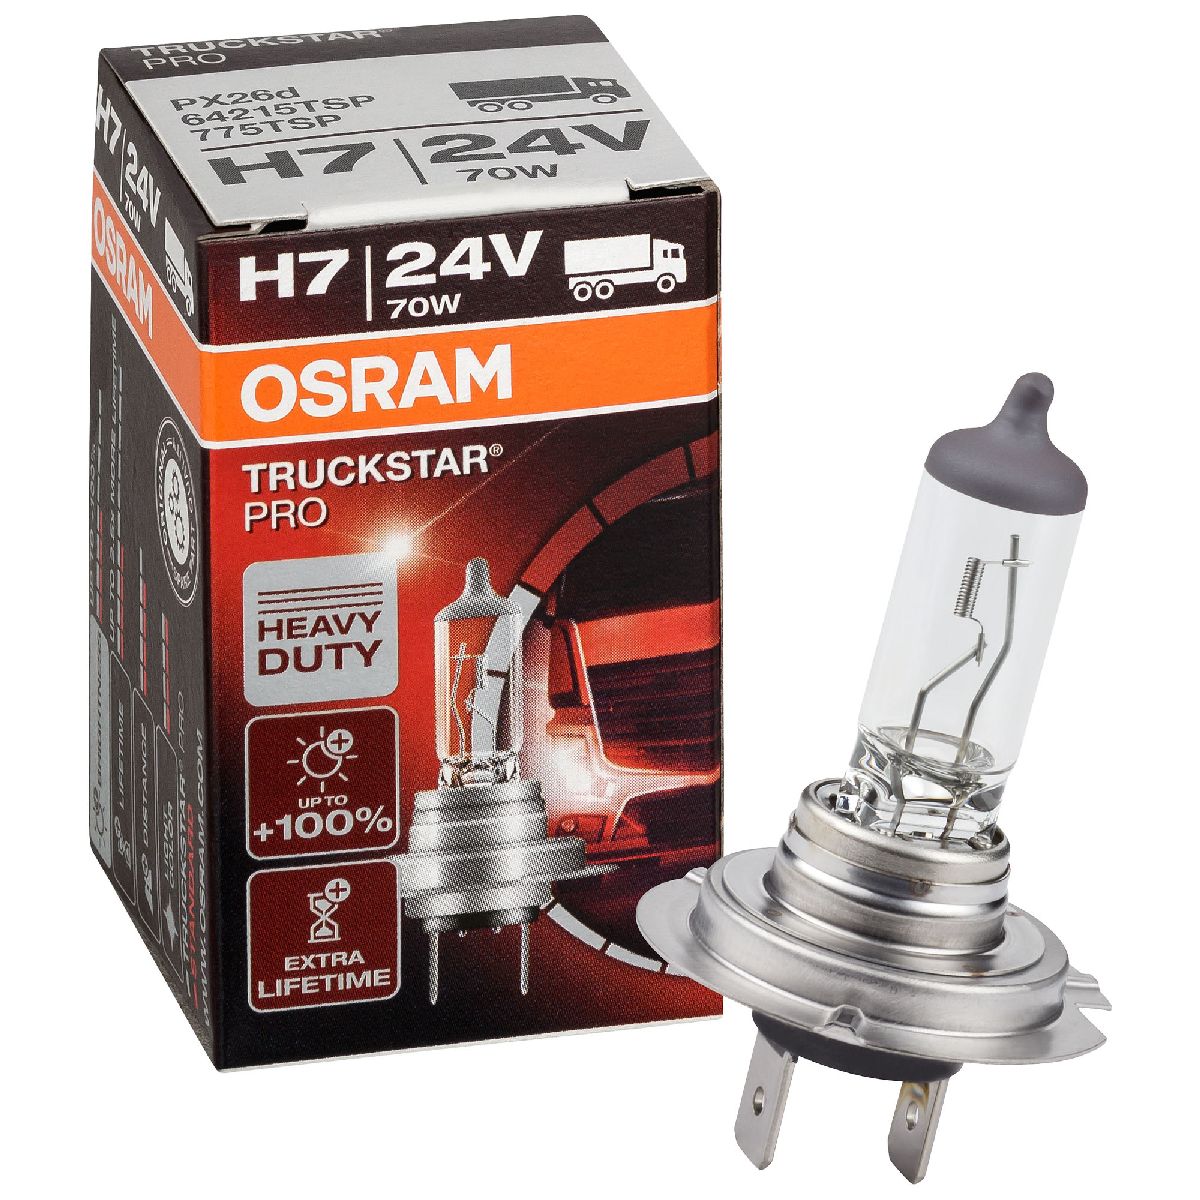 Auto-Lampen-Discount - H7 Lampen und mehr günstig kaufen - 10x BREHMA  Soffitte 10W 12V 11x30 SV8.5-8 30mm